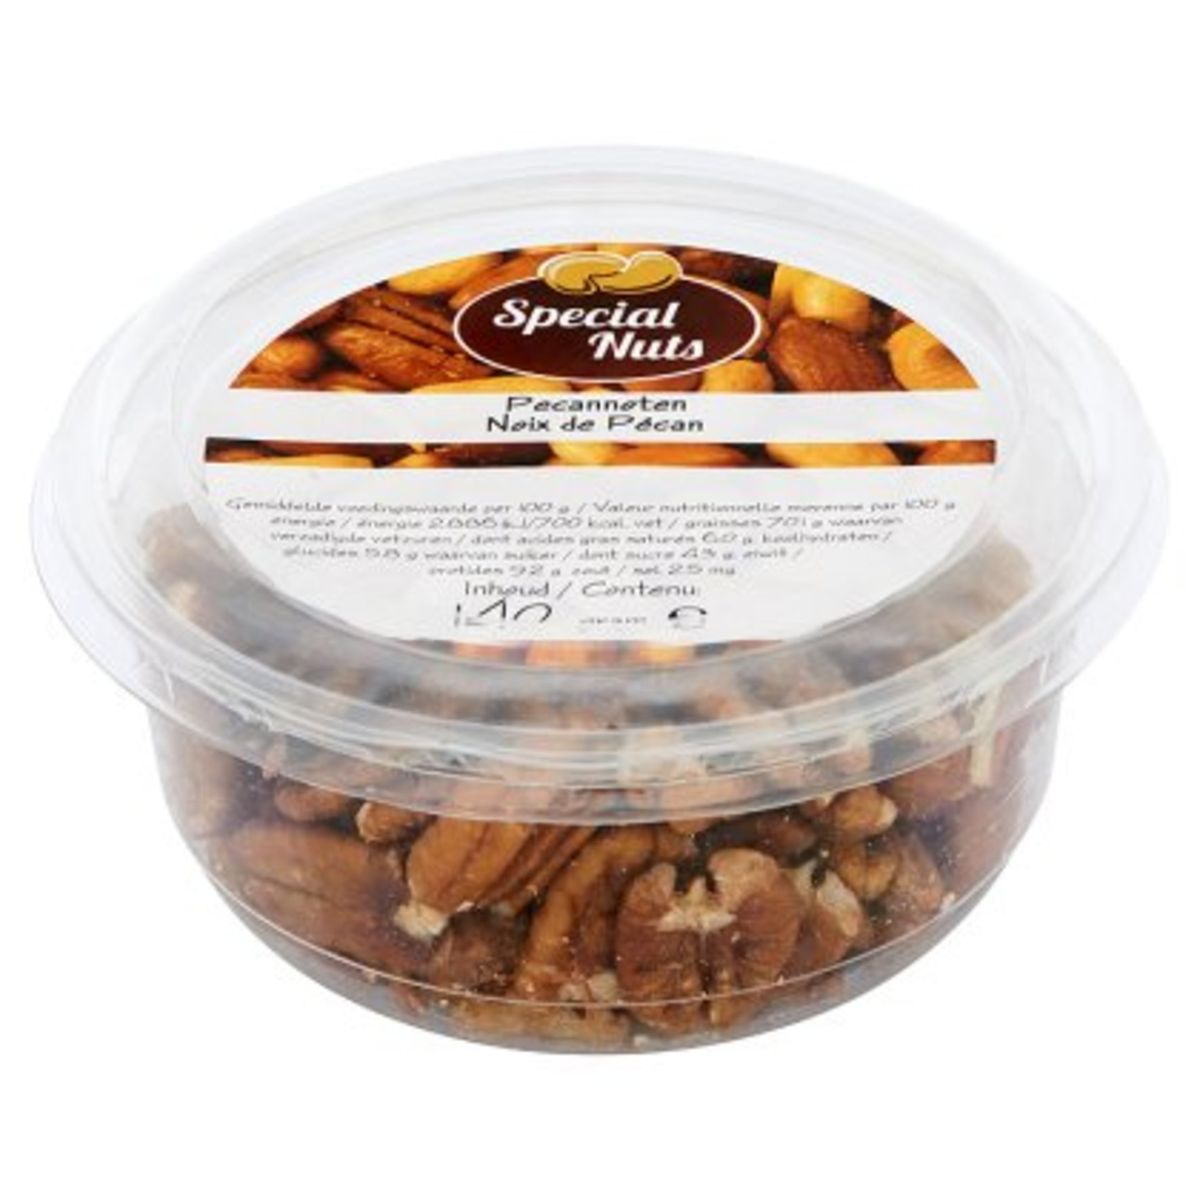 Special Nuts Pecannoten 140 g